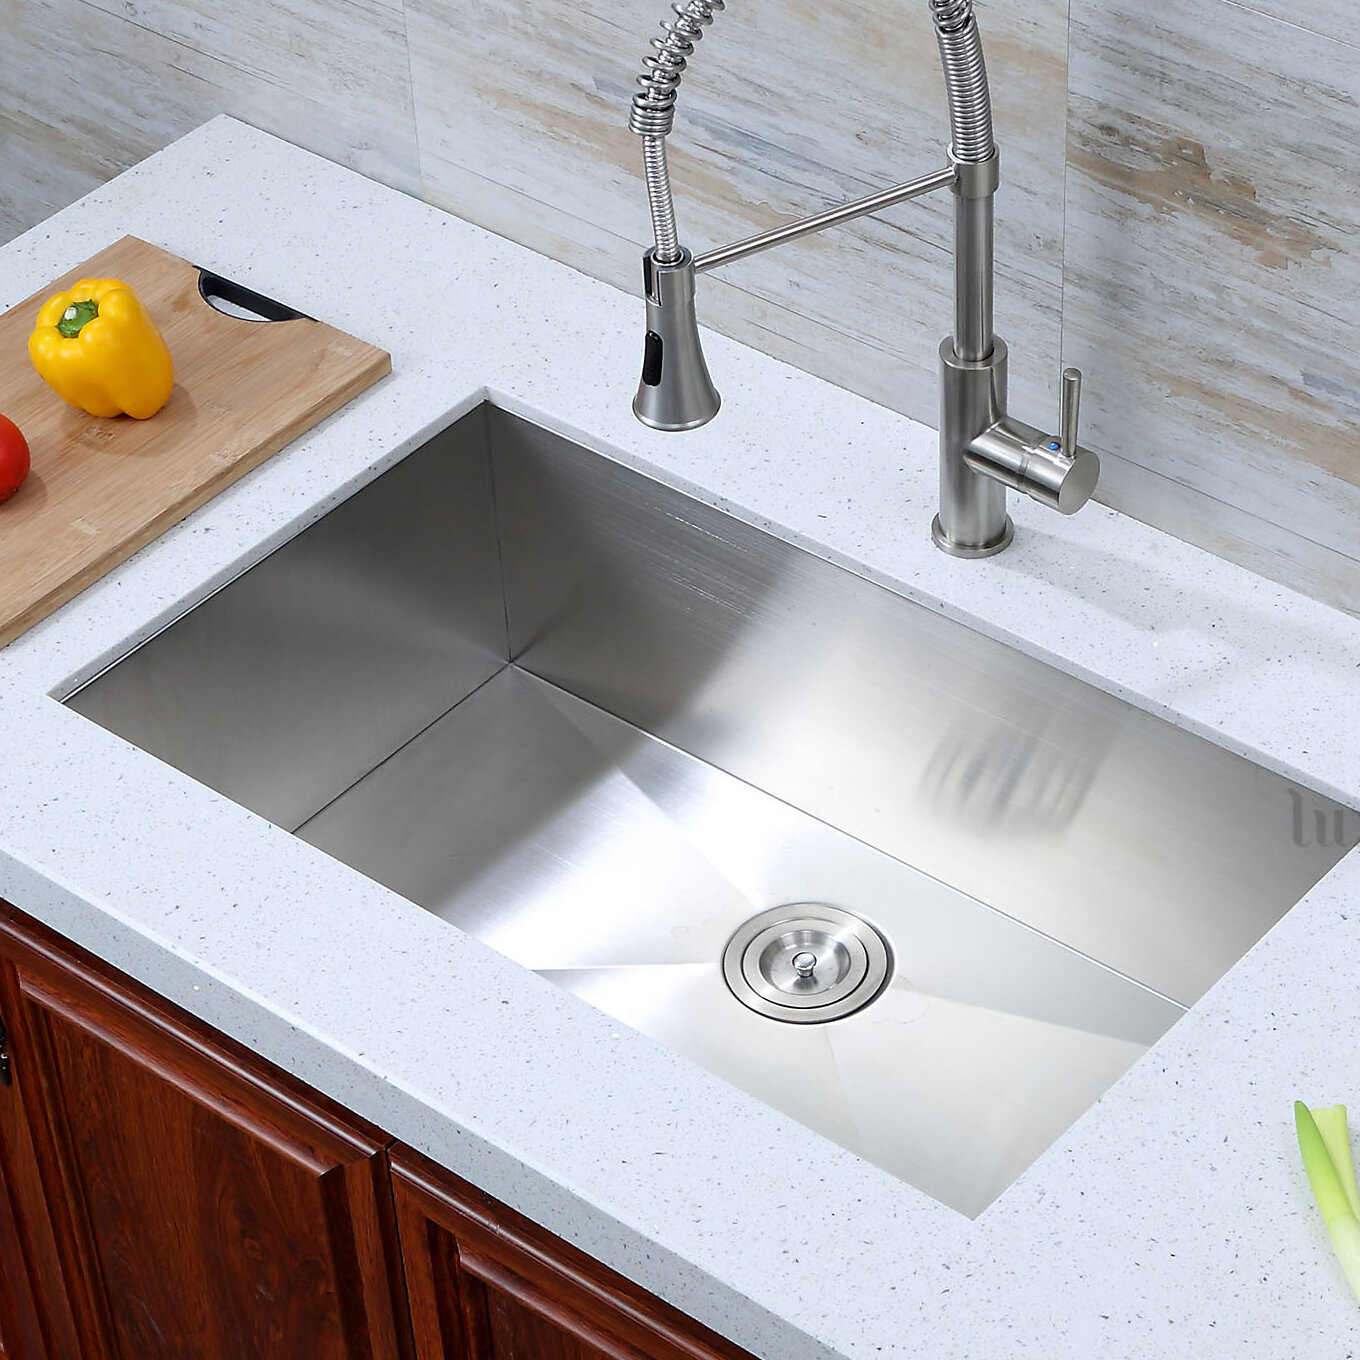 Luxier 32 L X 19 W Undermount Kitchen Sink Reviews Wayfair